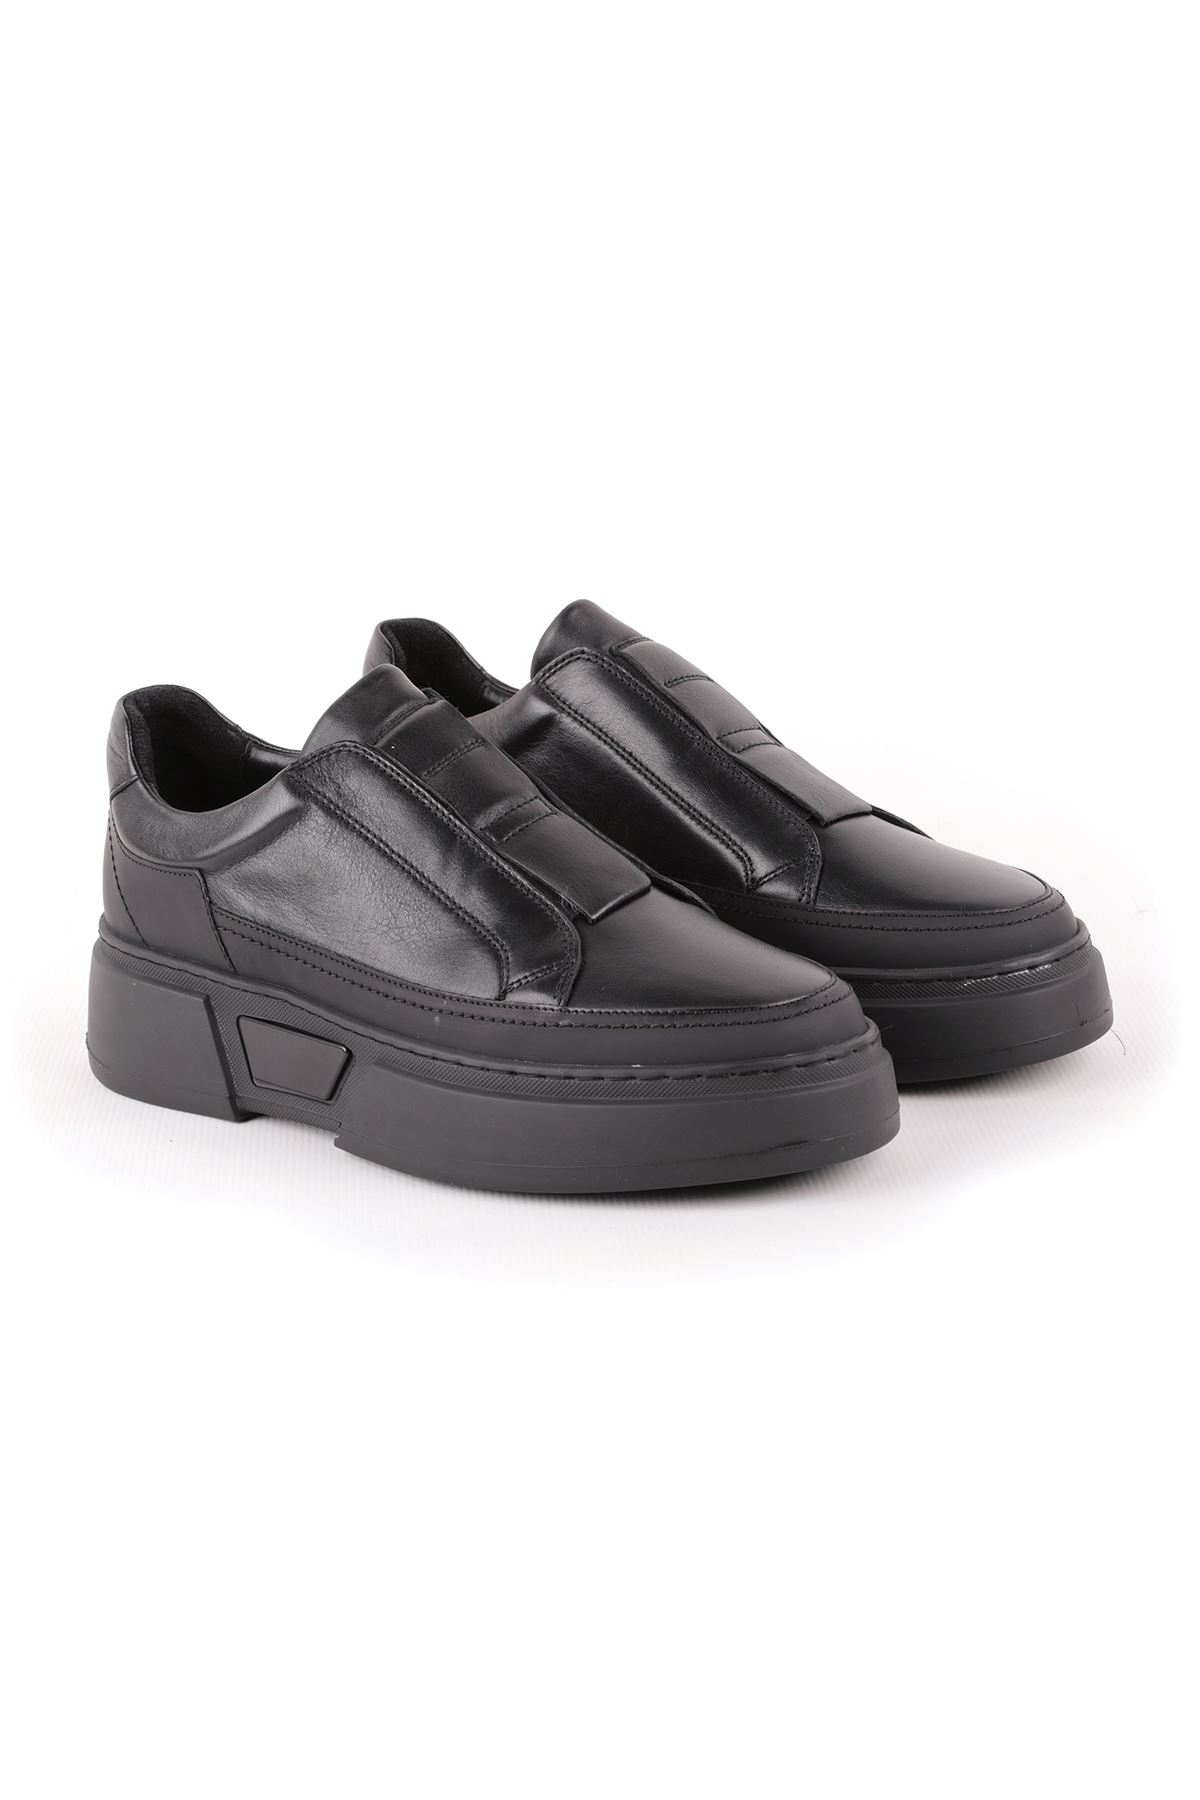 Libero L4995 Siyah Casual Erkek Ayakkabı 